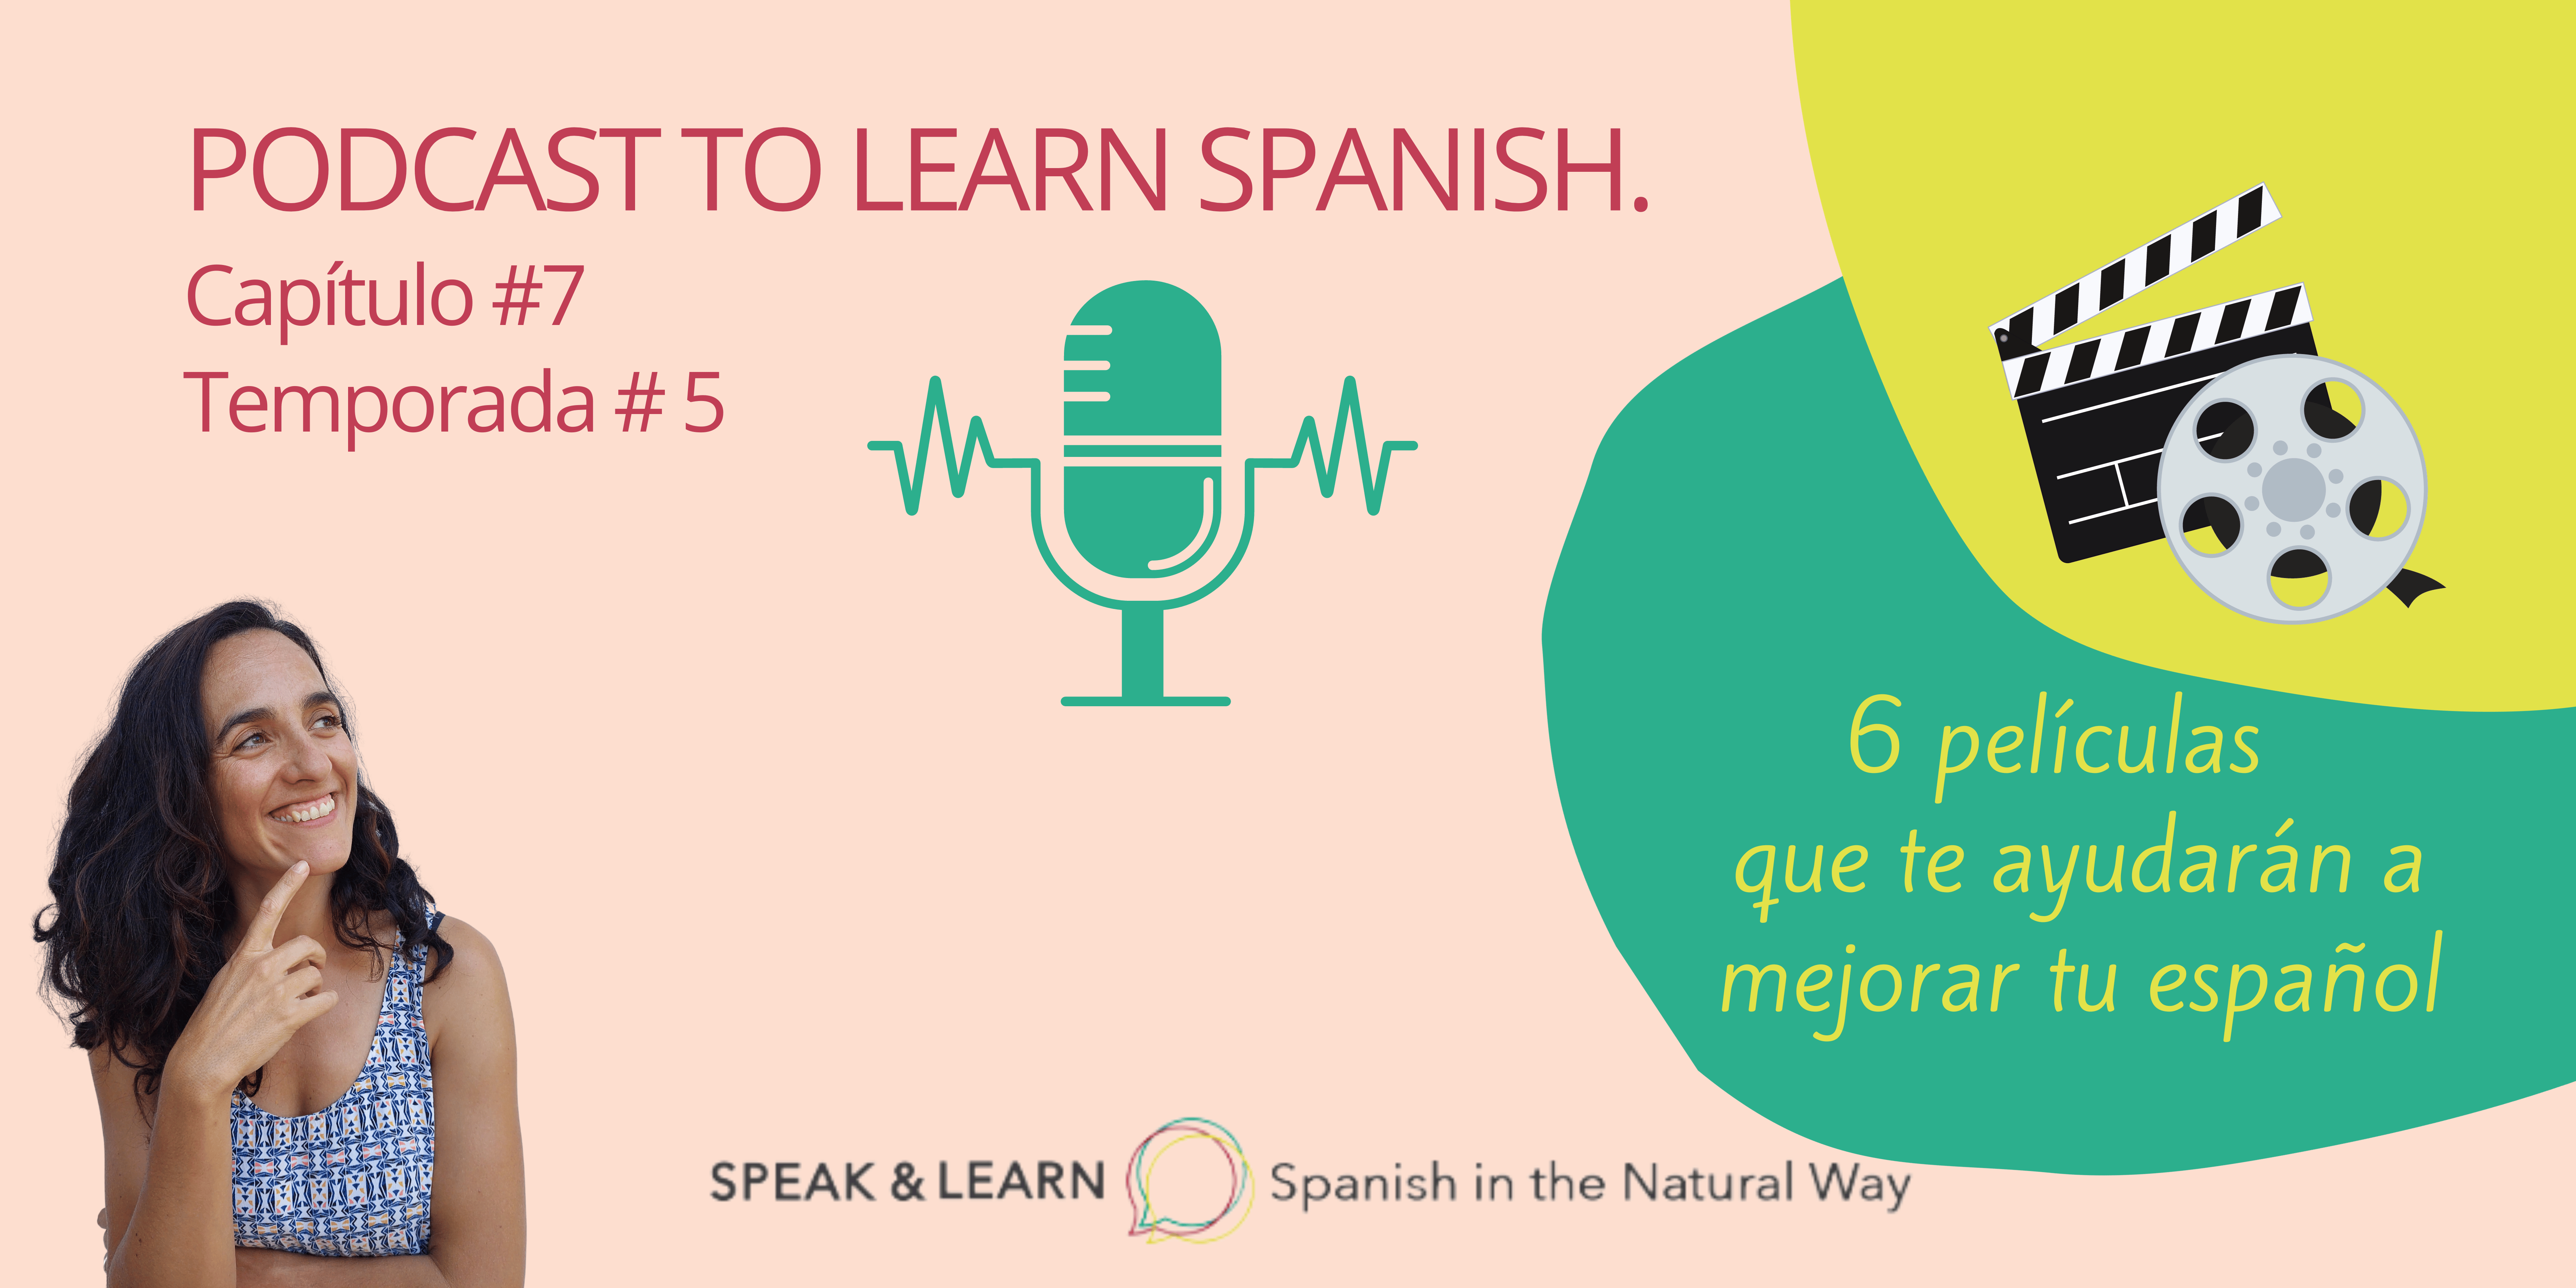 Portada de nuestro nuevo episodio del Podcast de Speak & Learn para aprender español donde te doy 6 PELICULAS QUE TE AYUDARÁN A MEJORAR TU ESPAÑOL